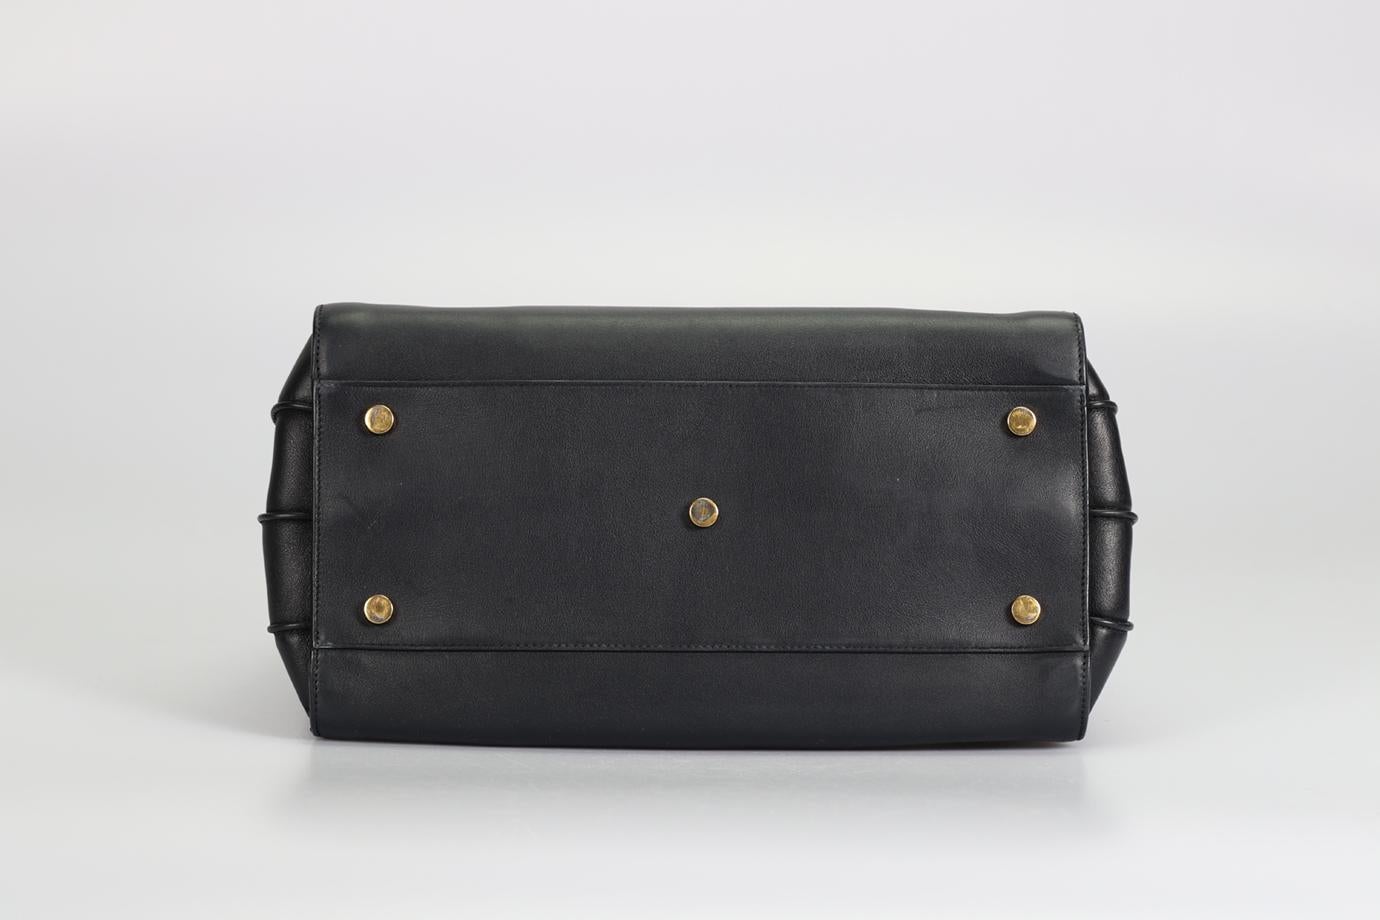 Saint Laurent Sac Du Jour Small Leather Tote Bag For Sale 4